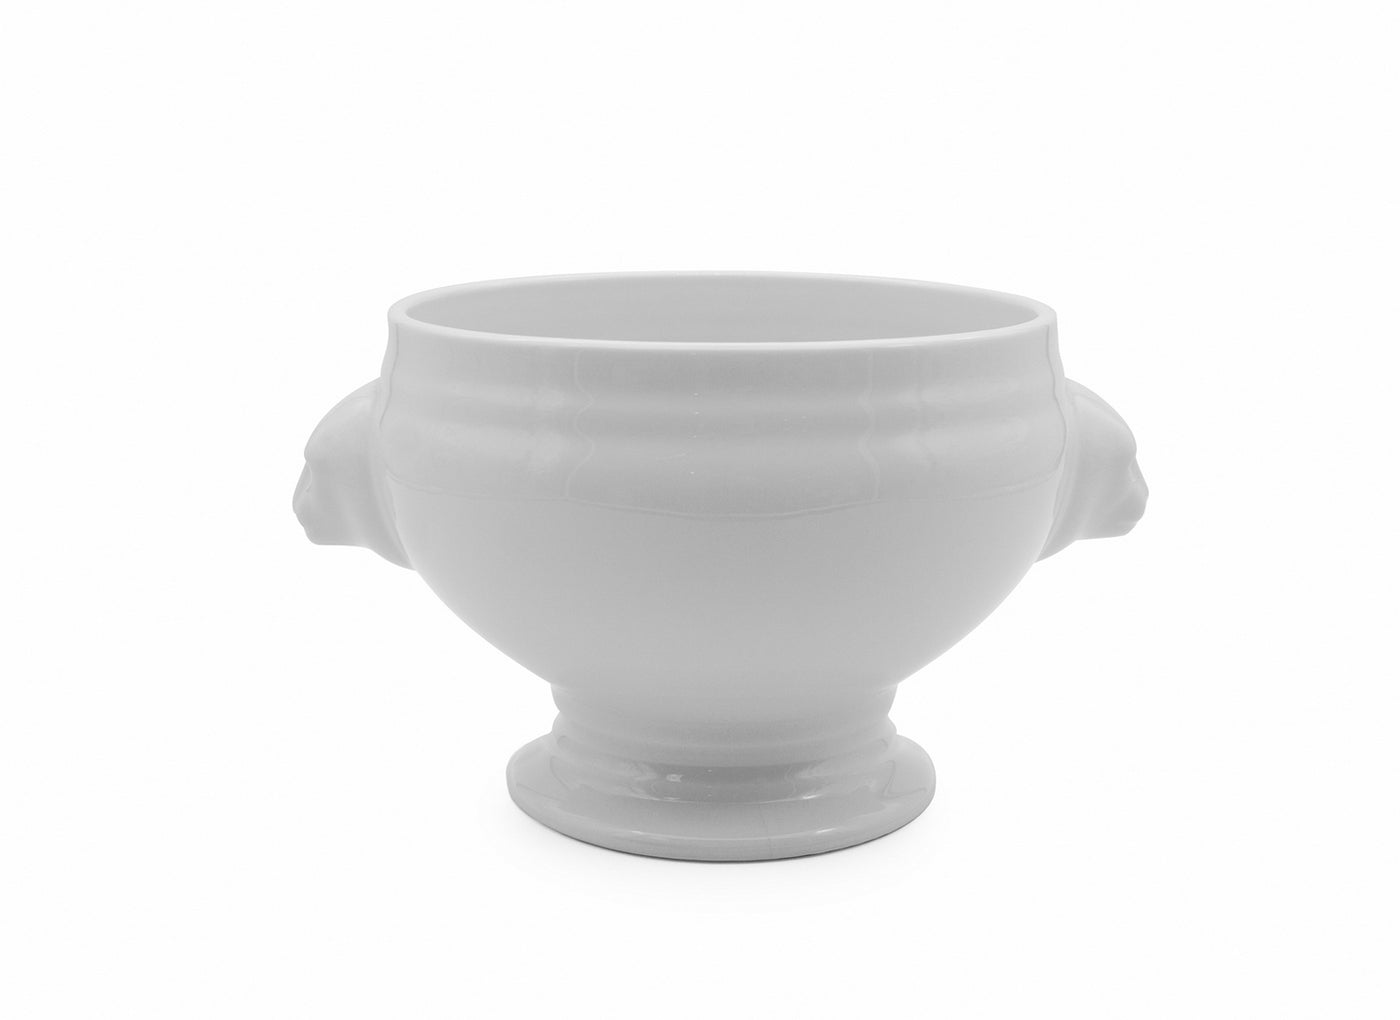 Bowl Redondo (Blanco) Mod. Leon 350 Mlts De Porcelana